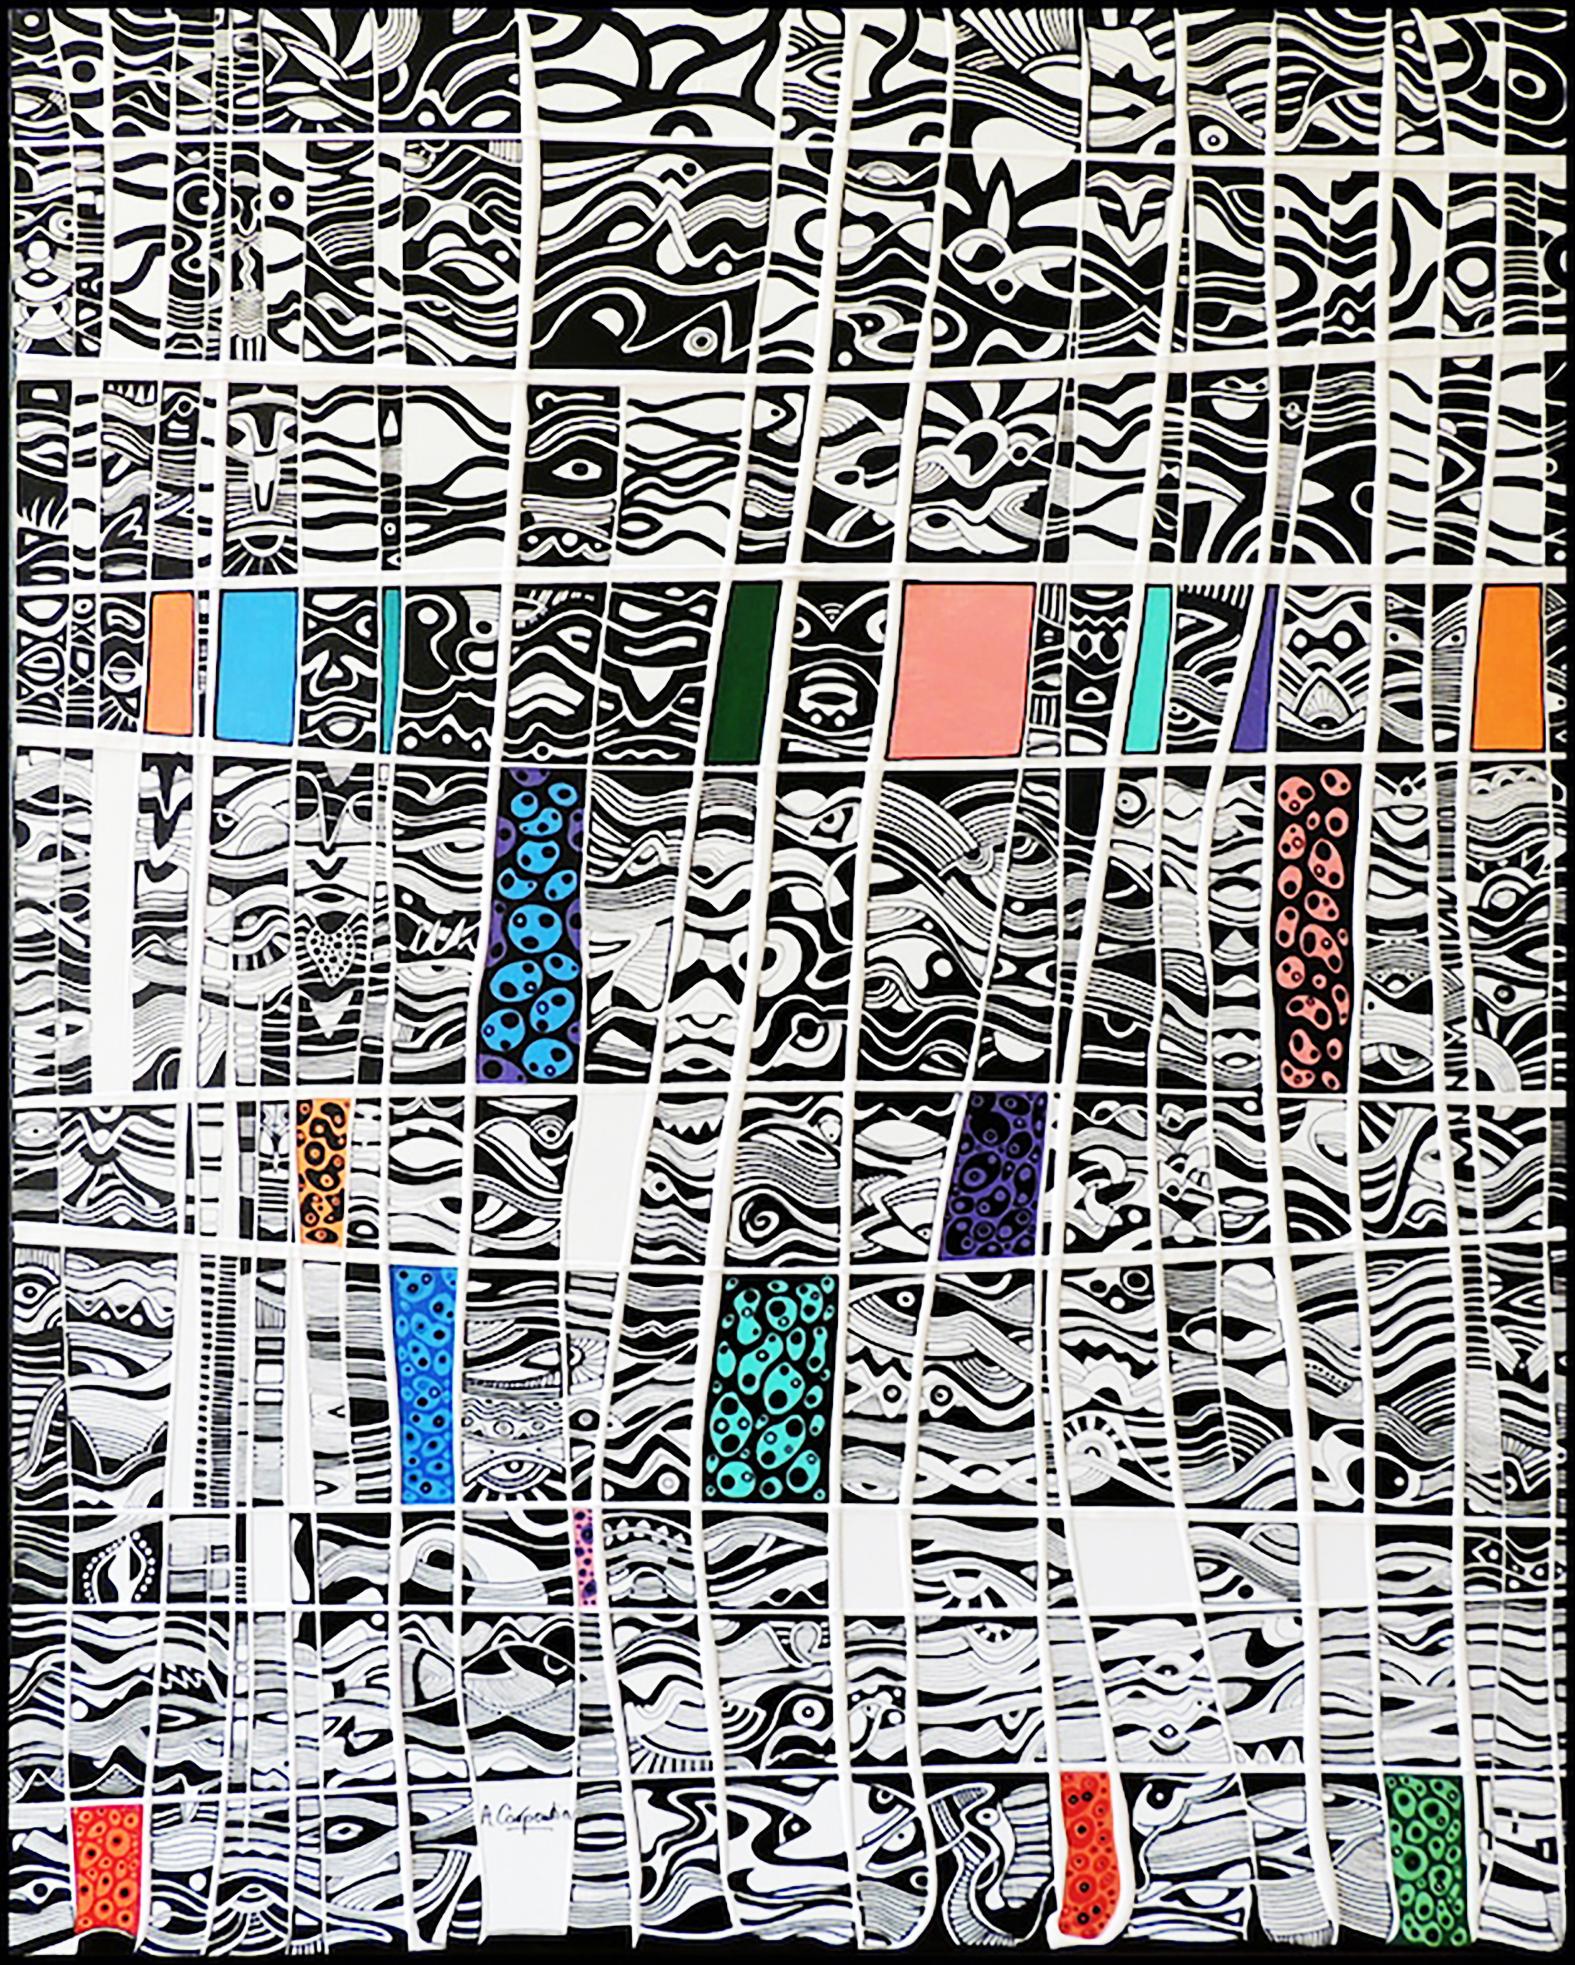 Spring Vibes - Alain Carpentier 
Acrylique sur toile 
25F - 81cm x 65cm 
2022 
1800 euros